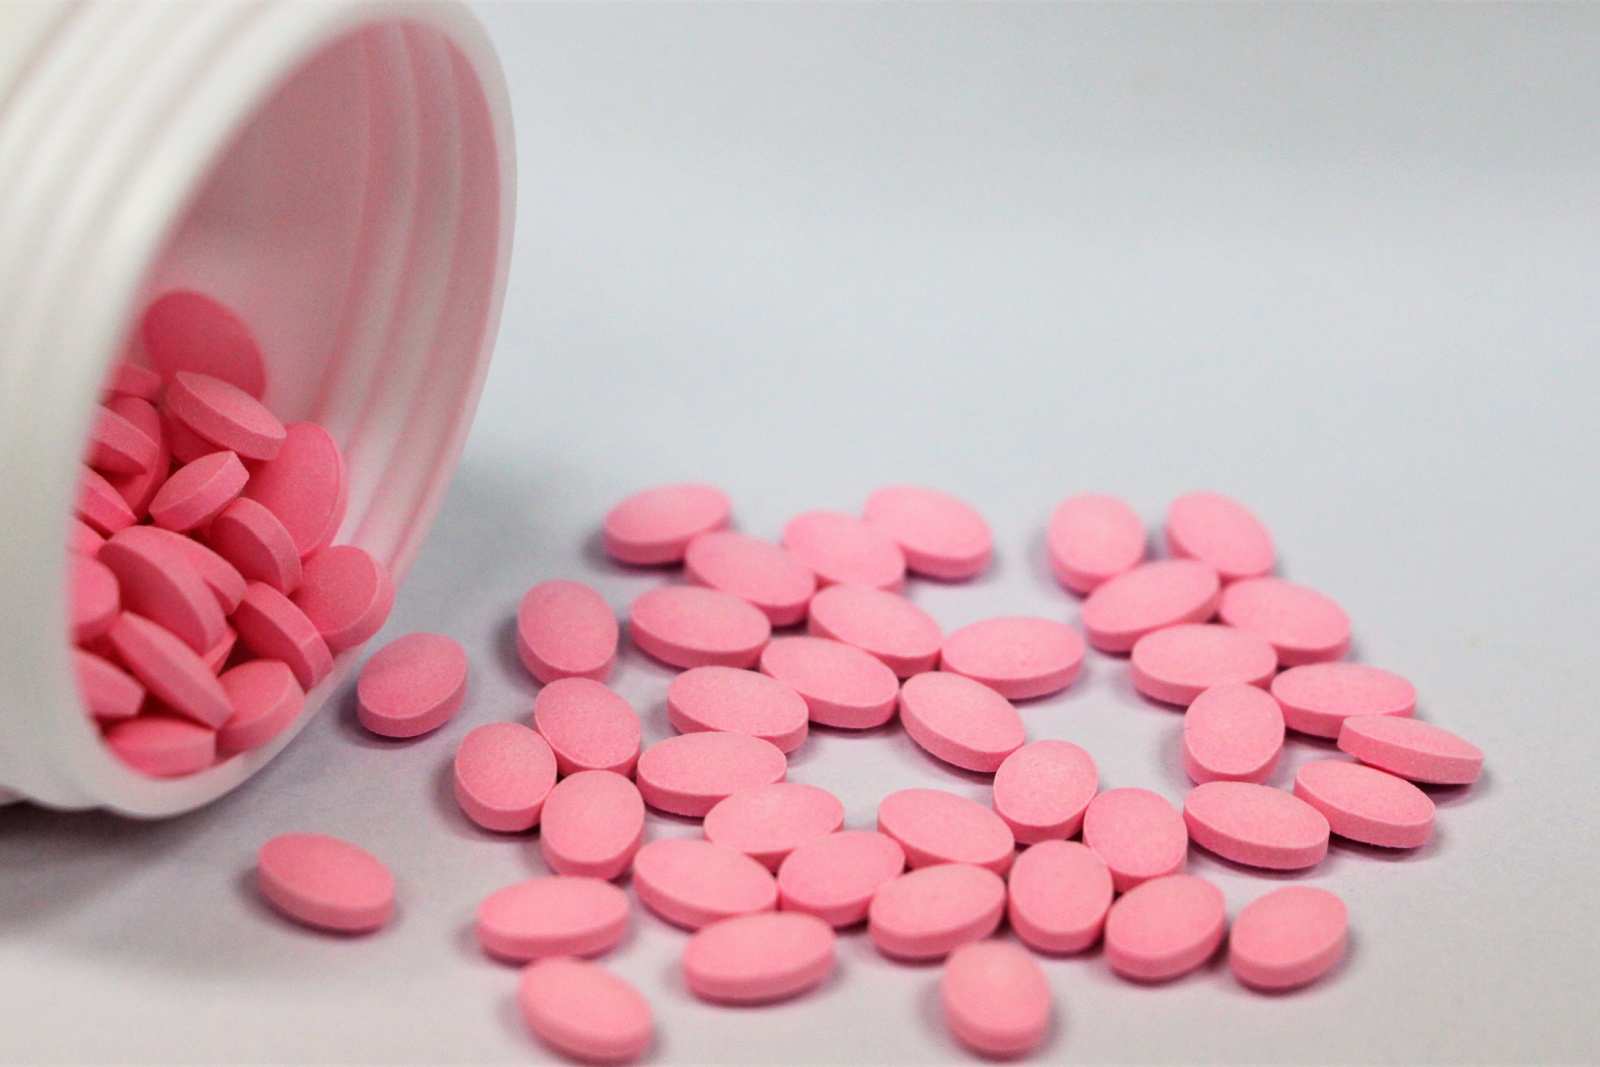 Roze tabletten van prednisolon gemorst uit witte plastic fles op witte achtergrond.